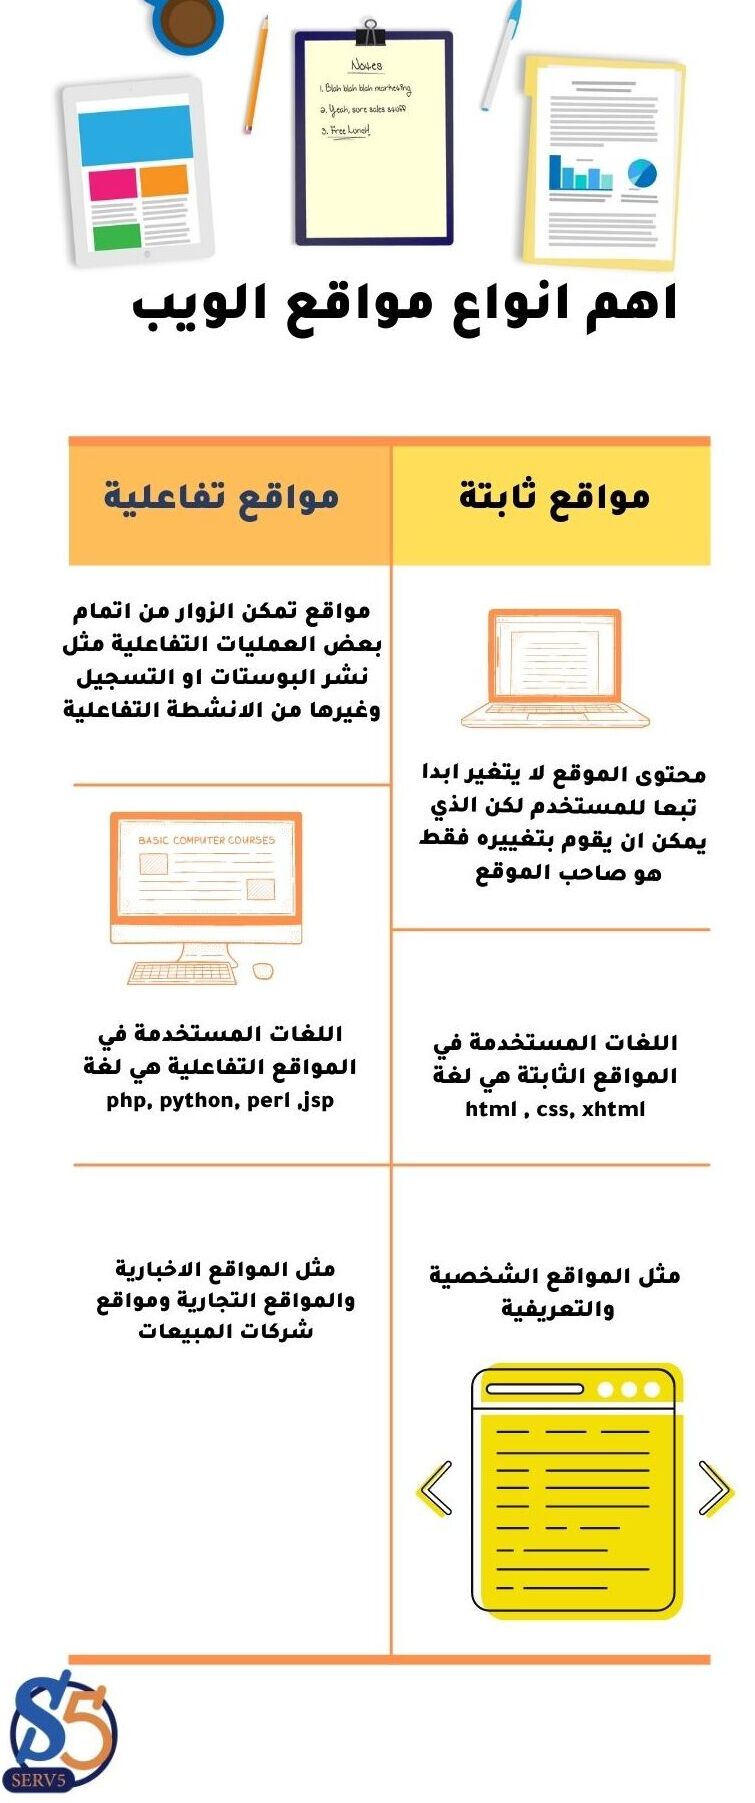 انواع مواقع الويب